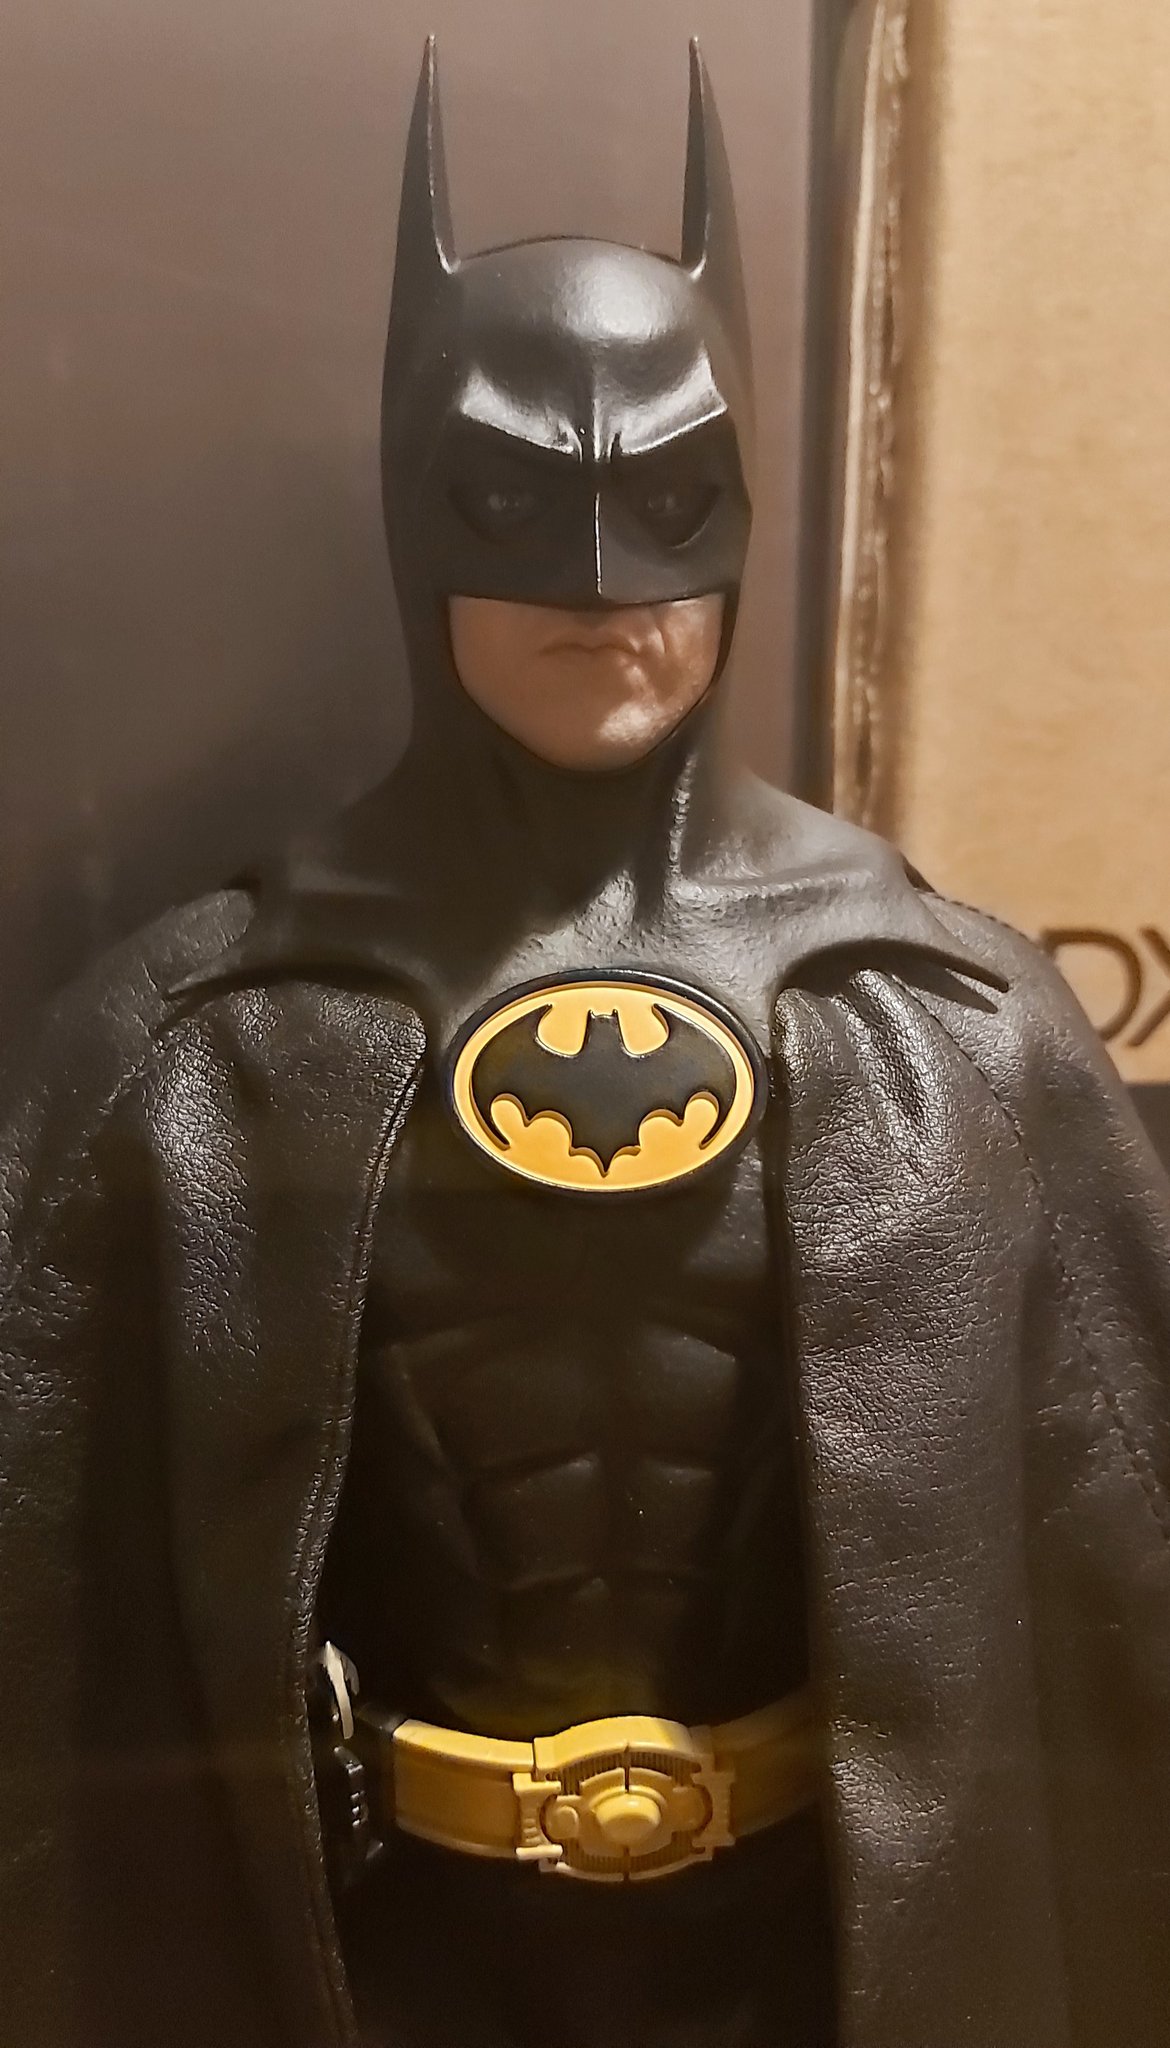 cien Halar Respiración Fernando Rodríguez on Twitter: "Batman 1989 1/6 de Hot Toys. Sencillamente  una maravilla de figura y representación. https://t.co/oEKmRHHtHx" / Twitter